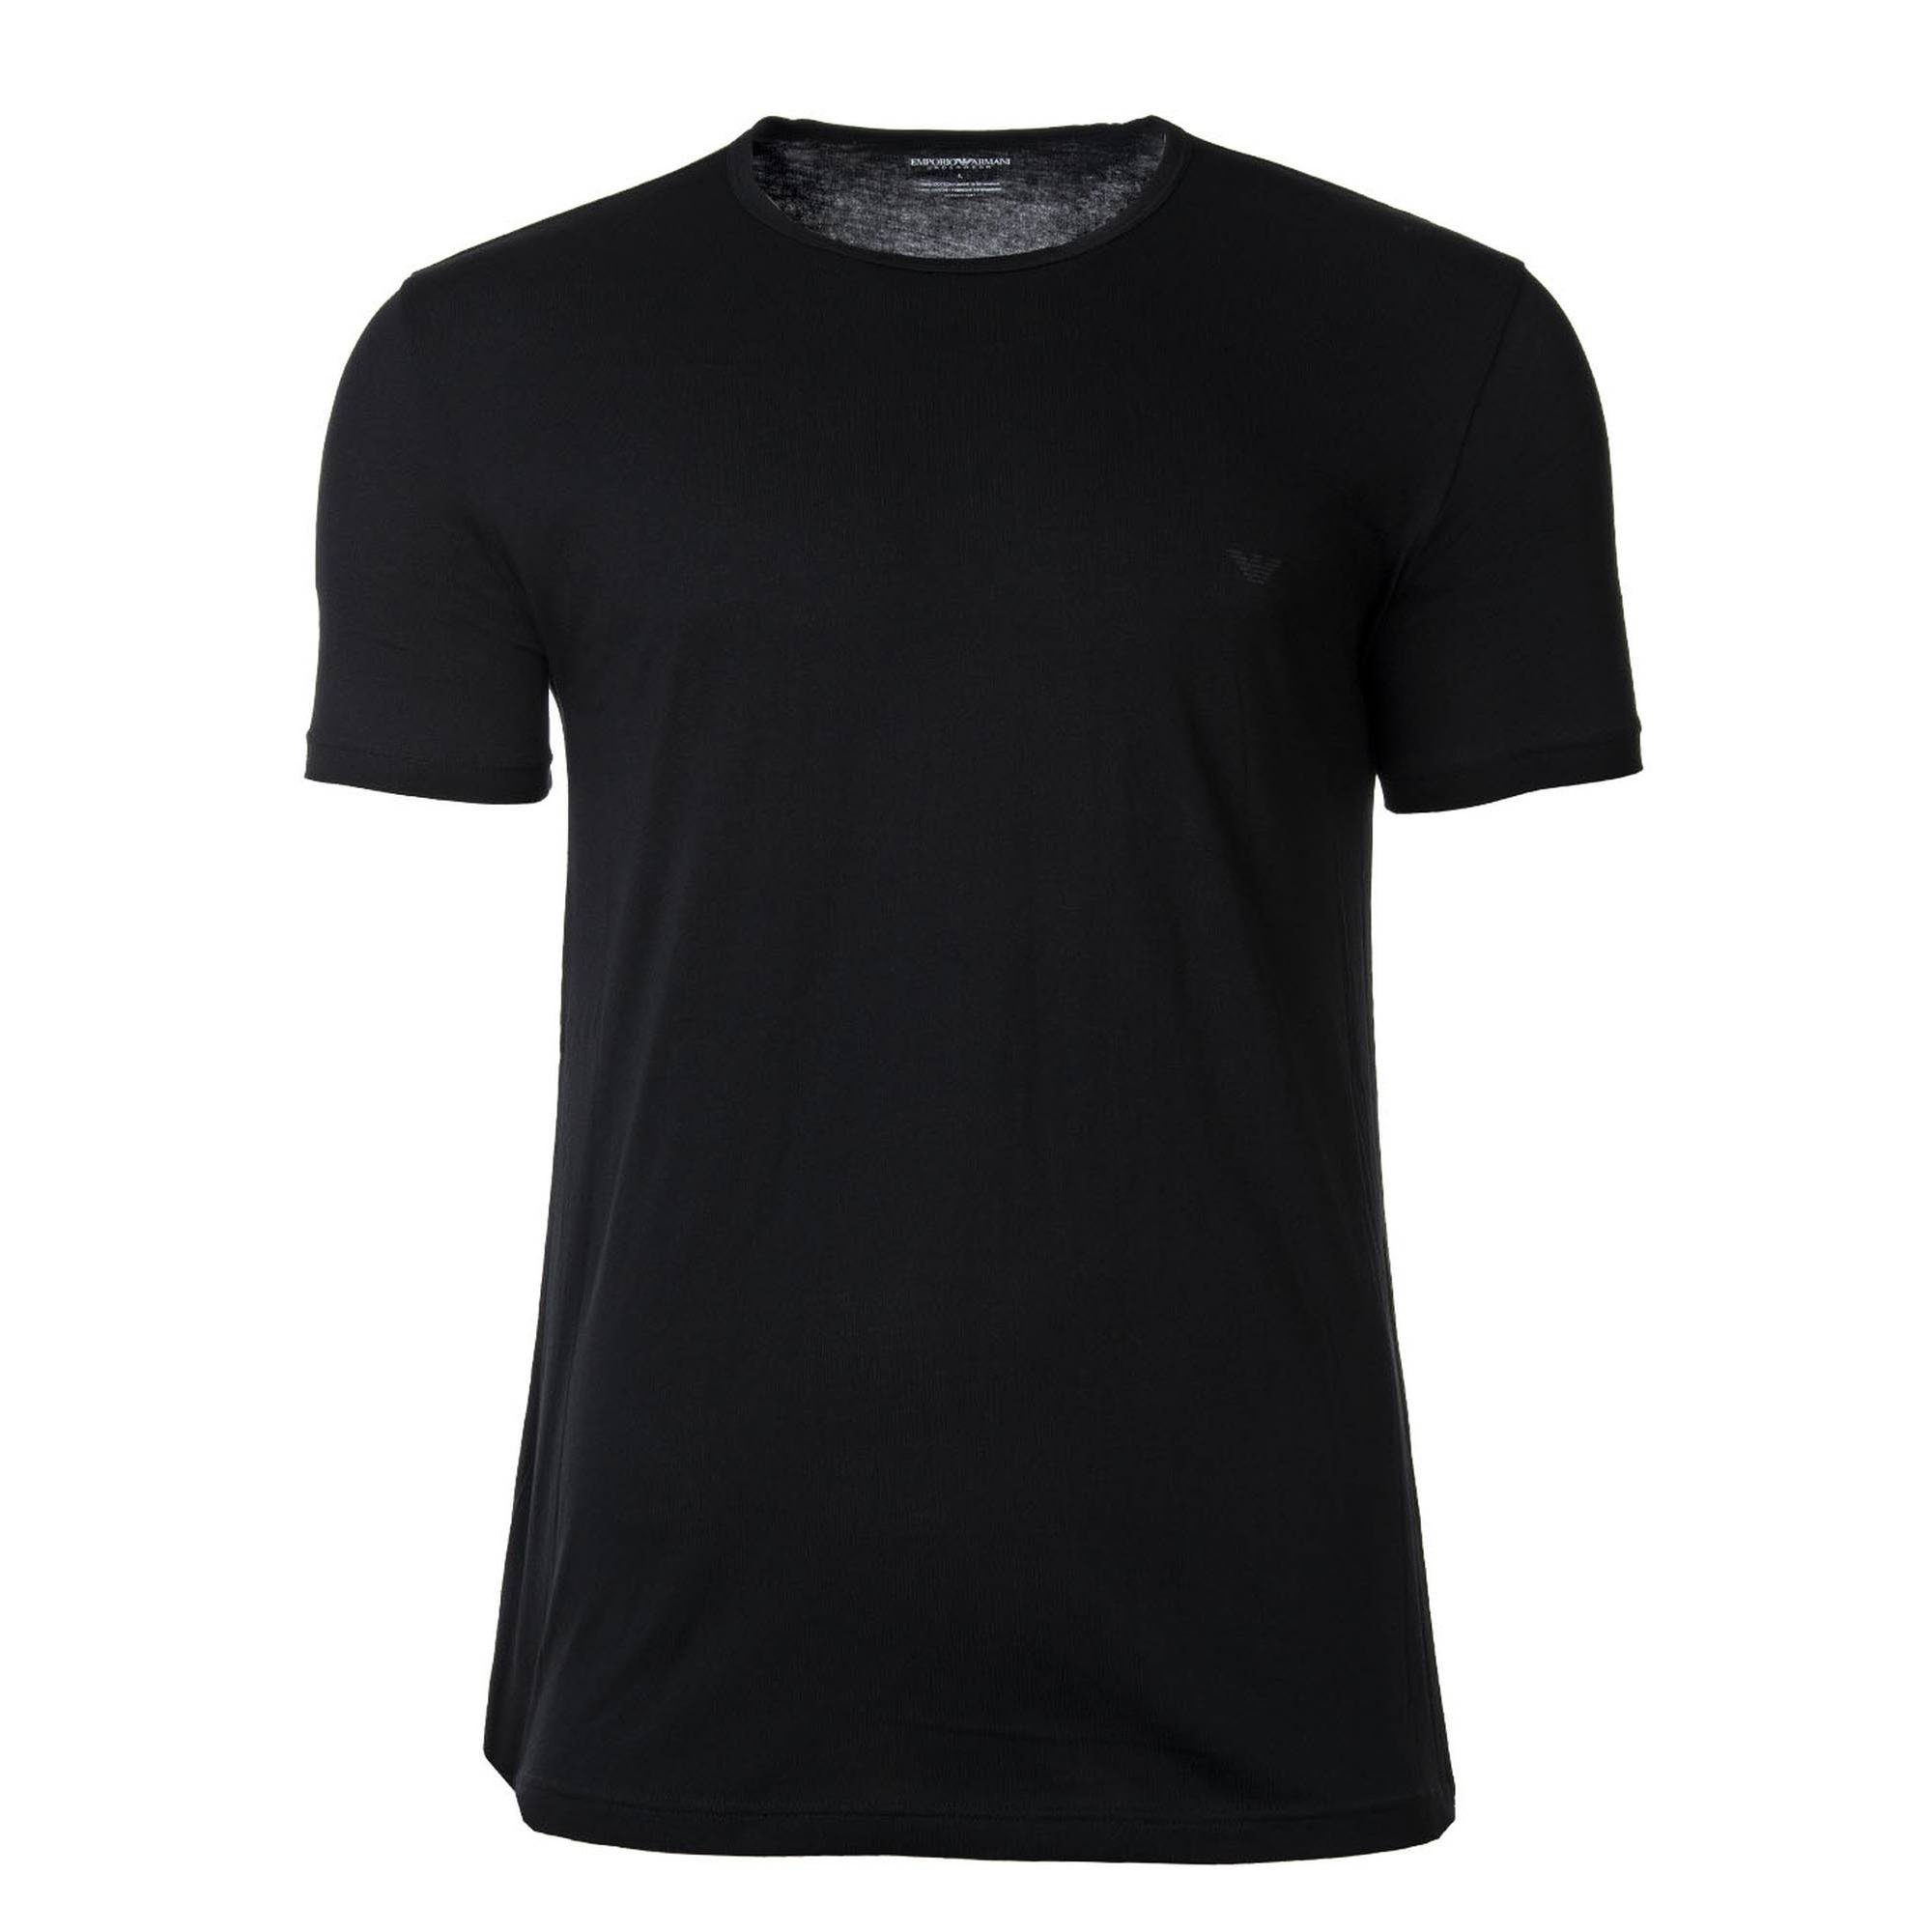 Emporio Armani T-Shirt Herren - Pack Rundhals Crew Neck, T-Shirt Schwarz/Grau 2er